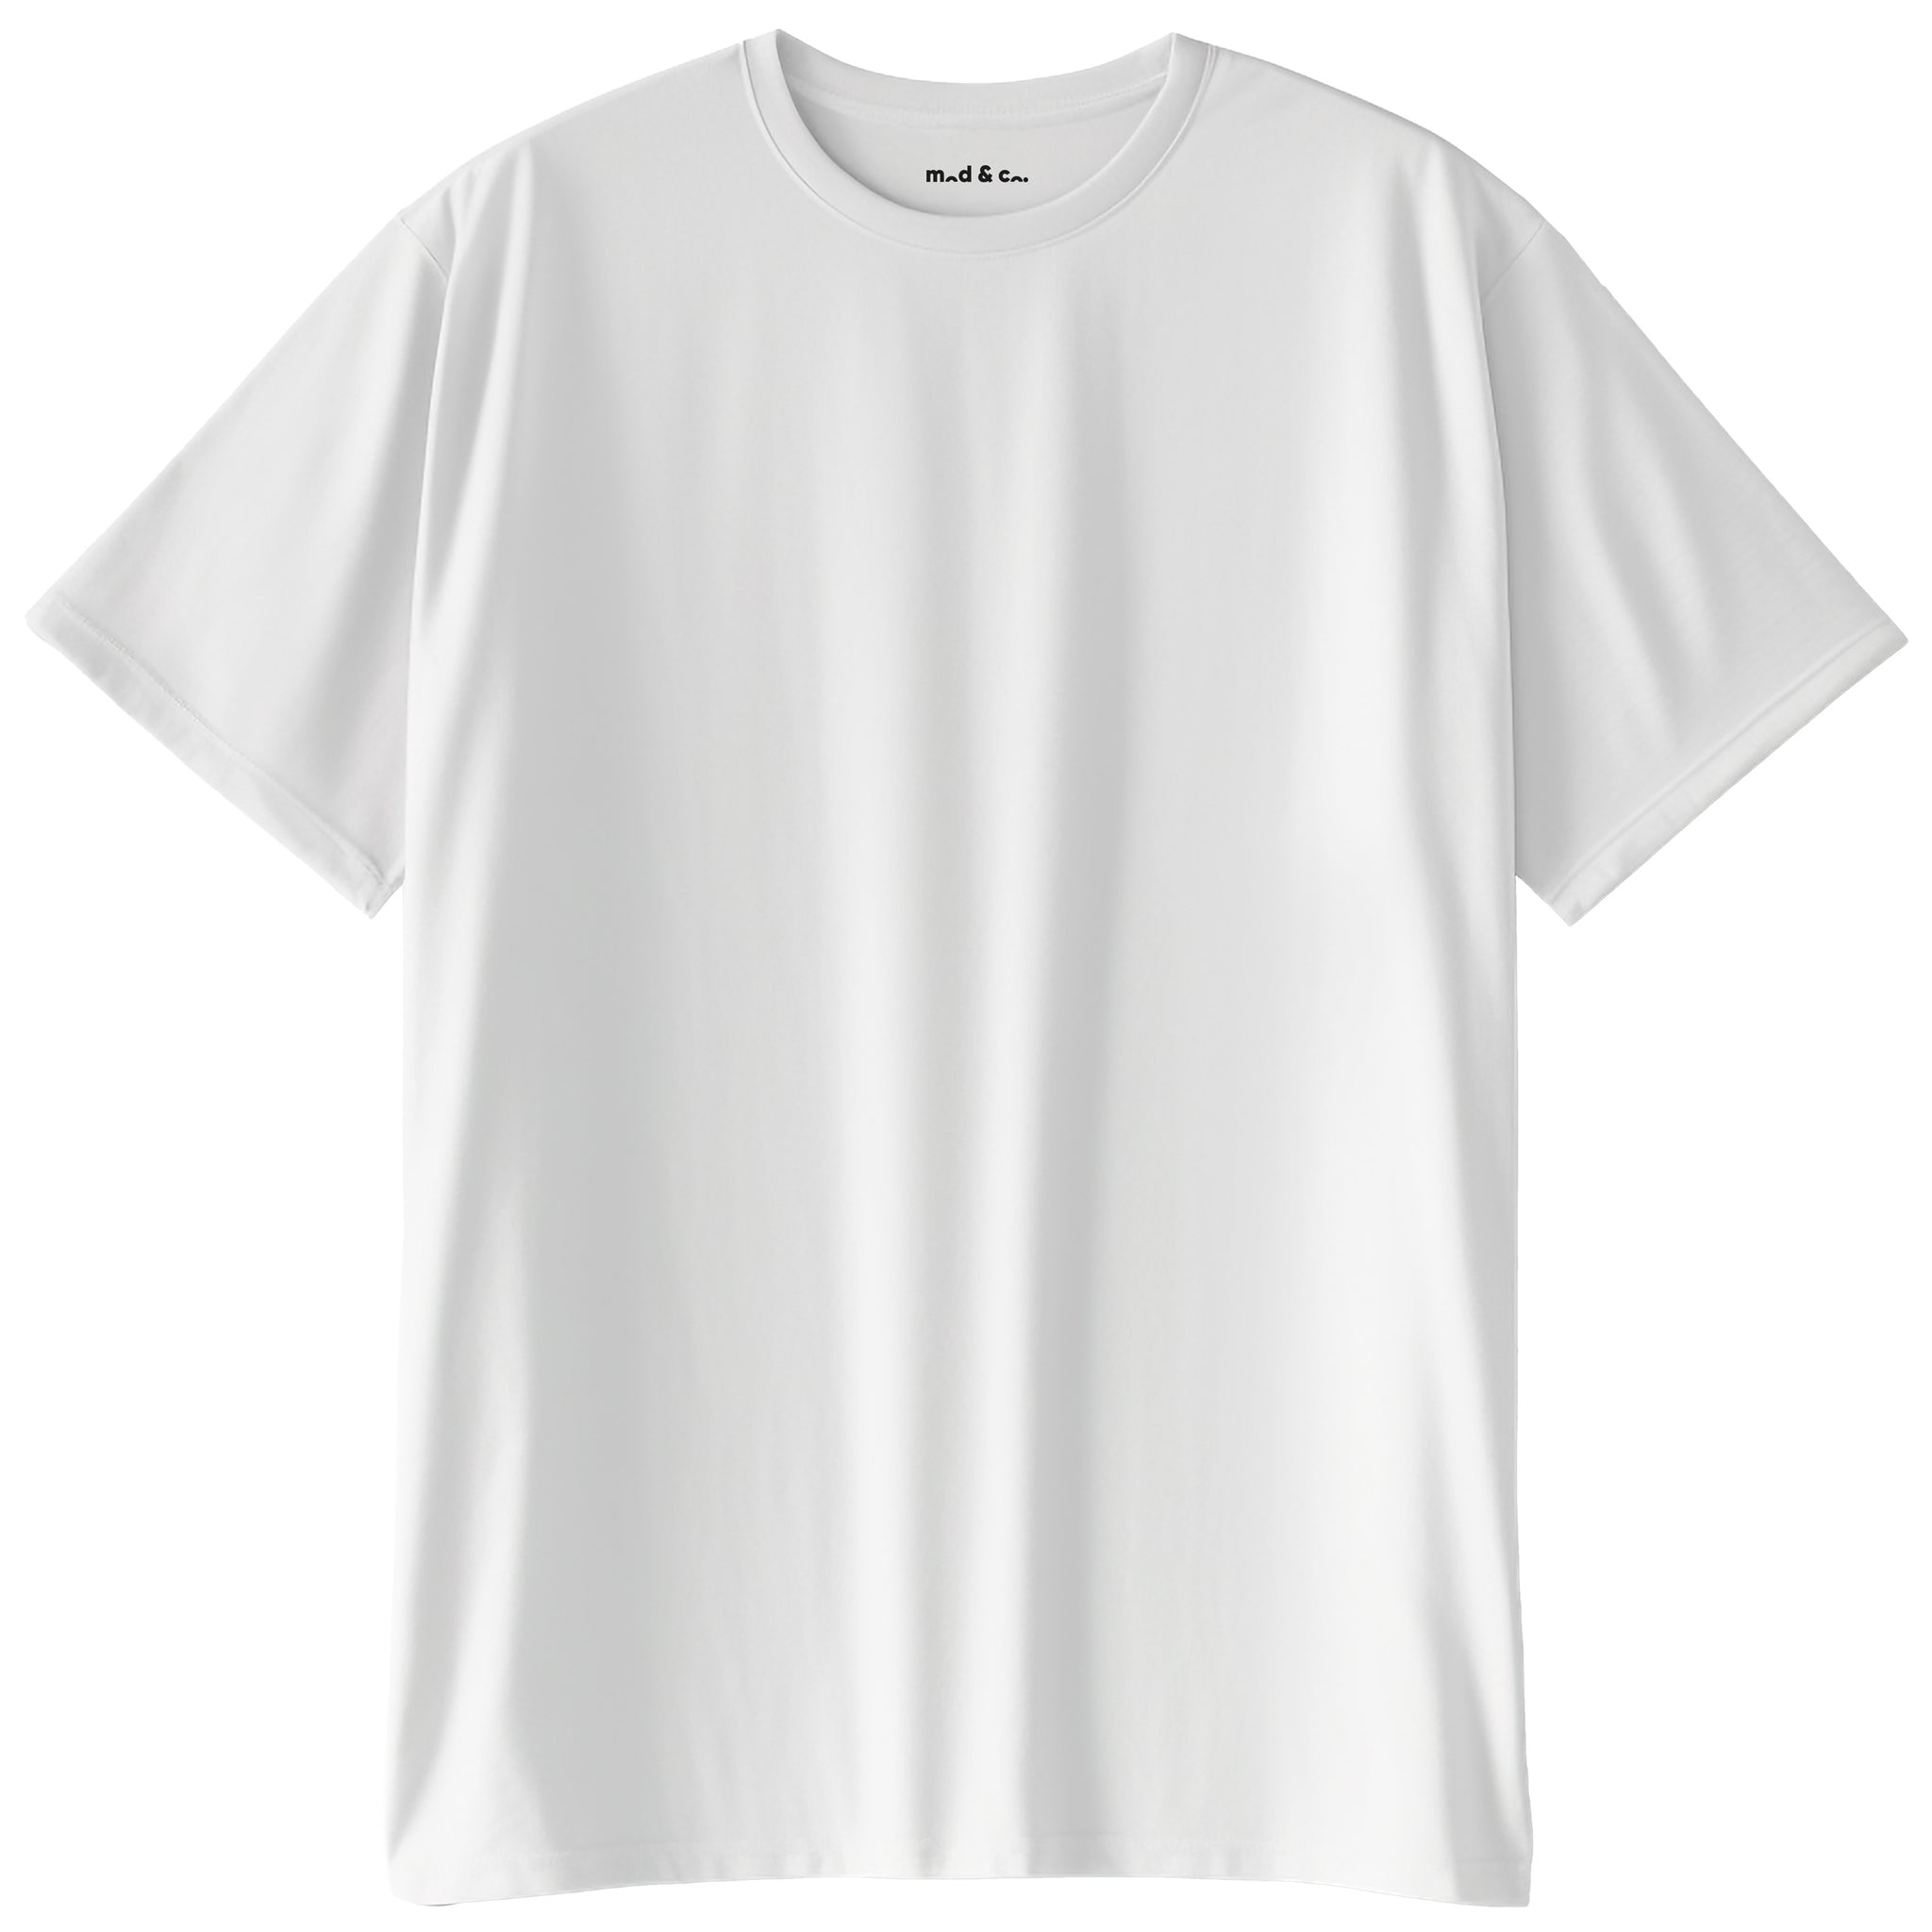 Basic Oversize T-Shirt